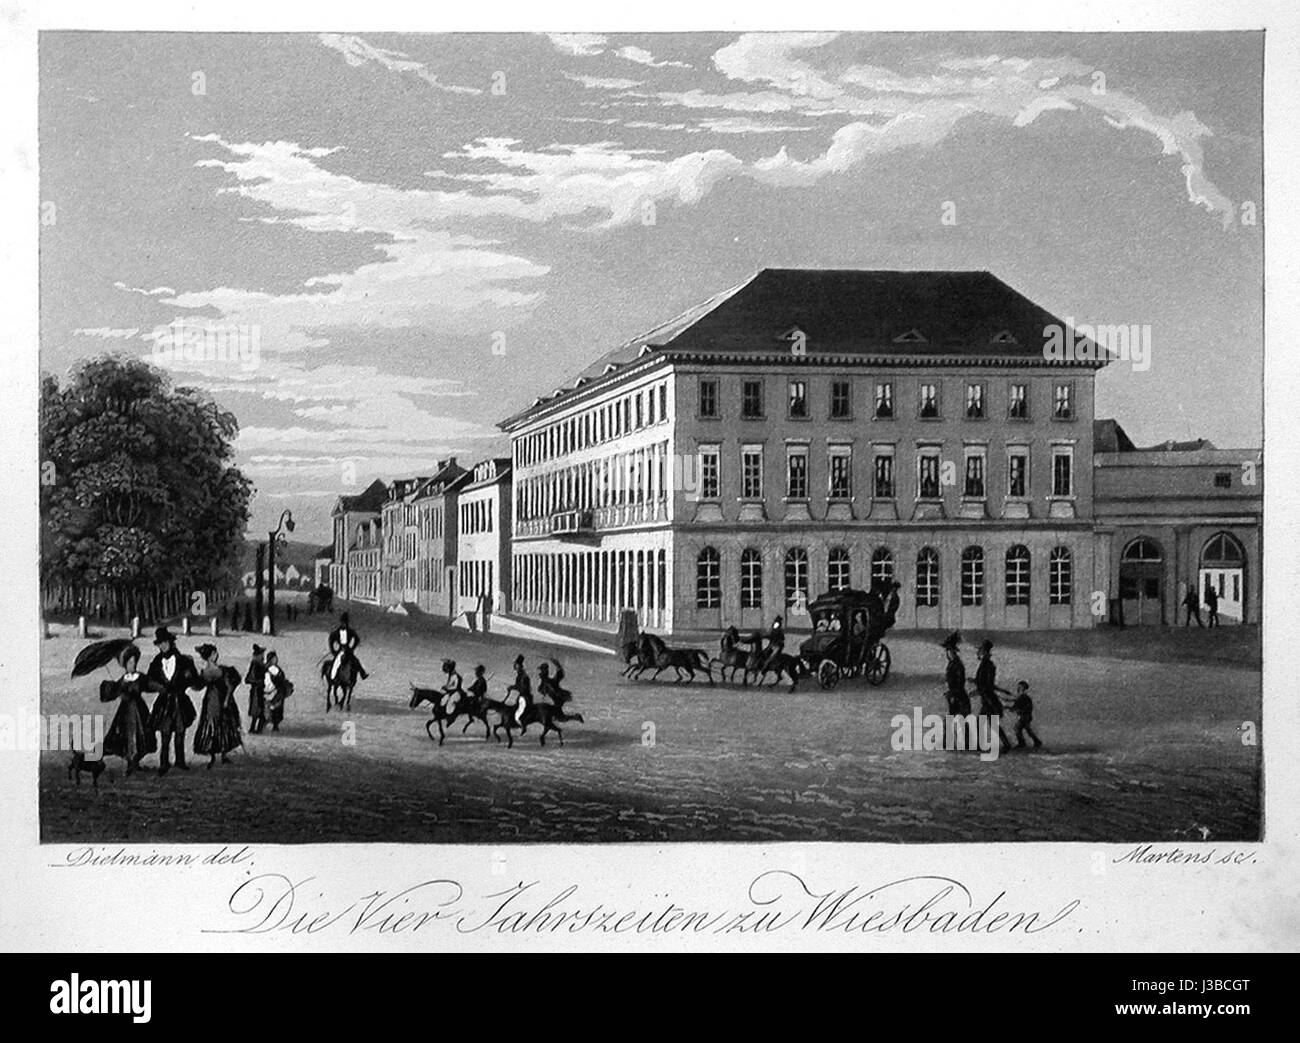 Die Vier Jahreszeiten zu Wiesbaden 1830 Stock Photo